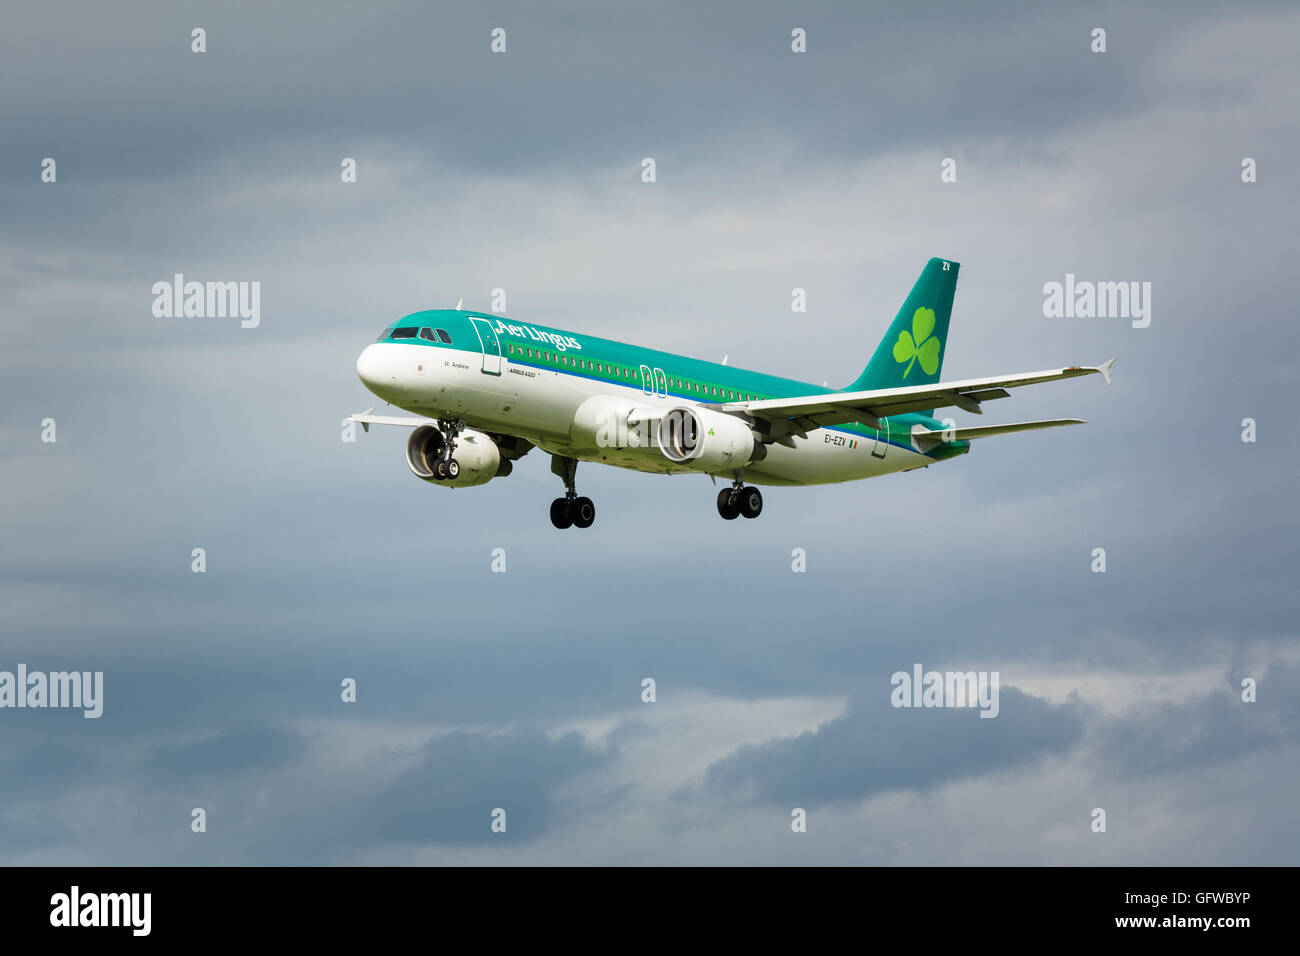 Aer Lingus avion volant dans les airs avec des roues vers le bas Banque D'Images